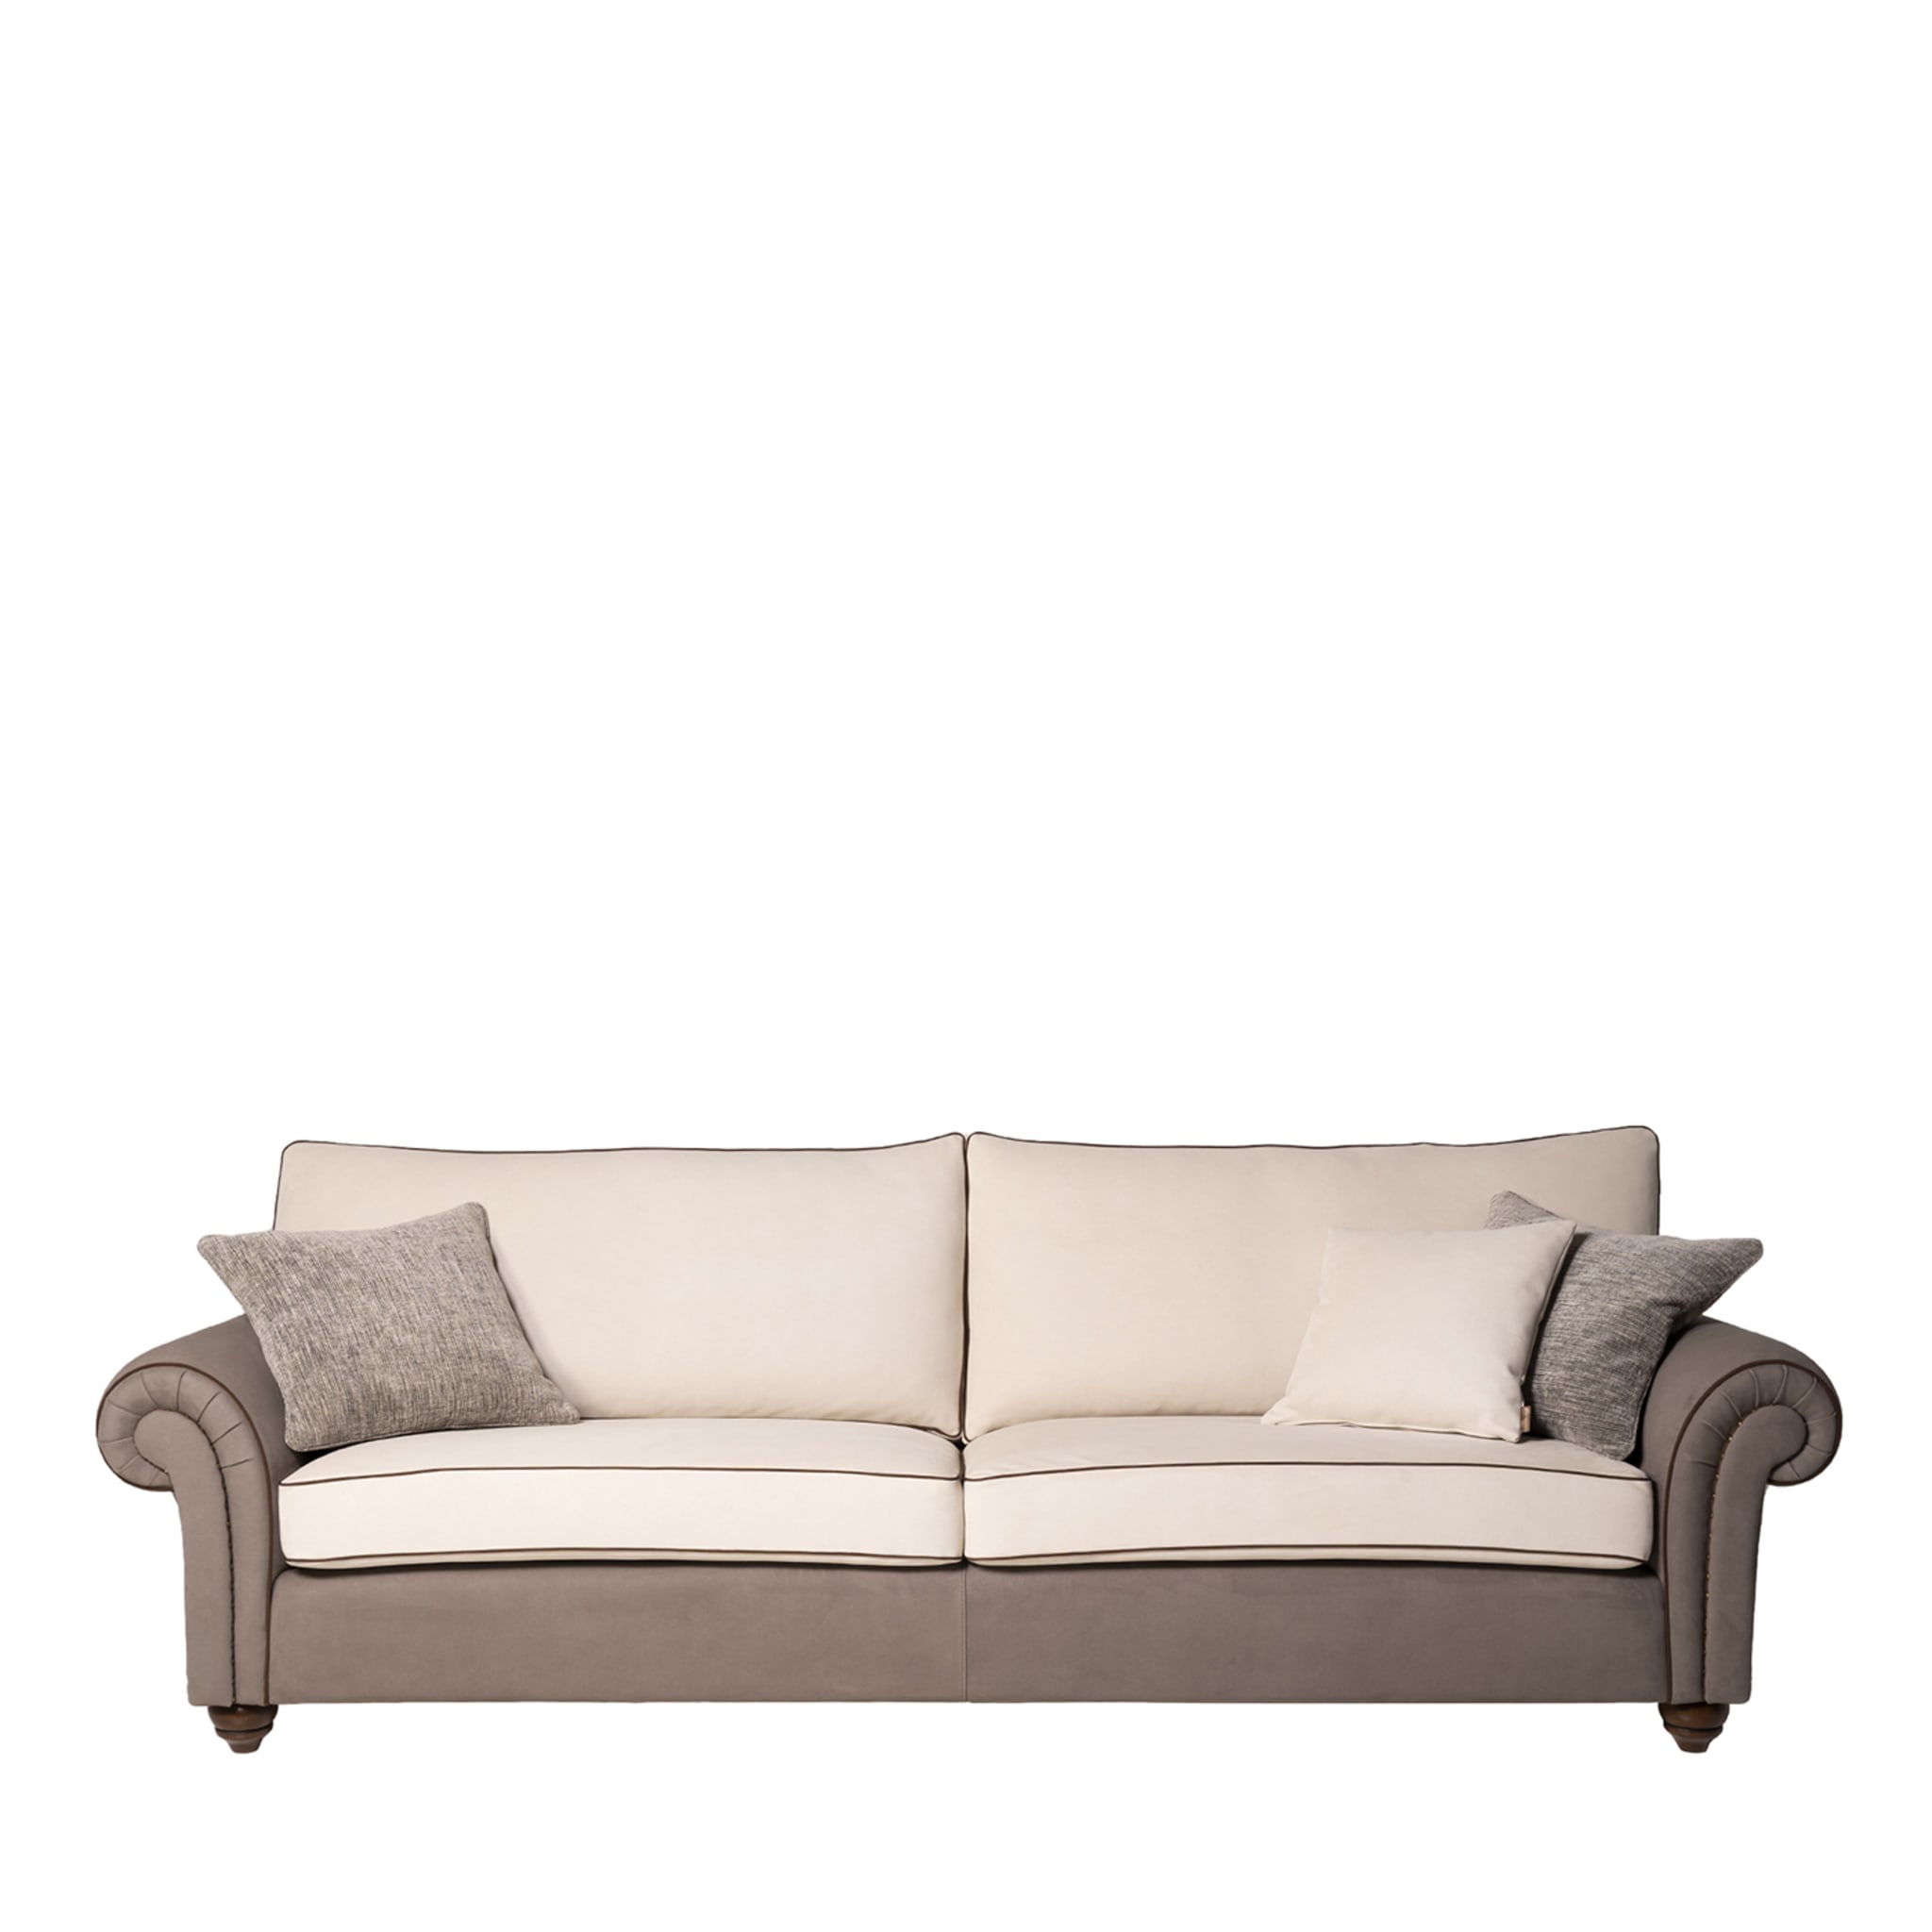 Borghese 3-Sitzer Sofa von Marco und Giulio Mantellassi - Hauptansicht